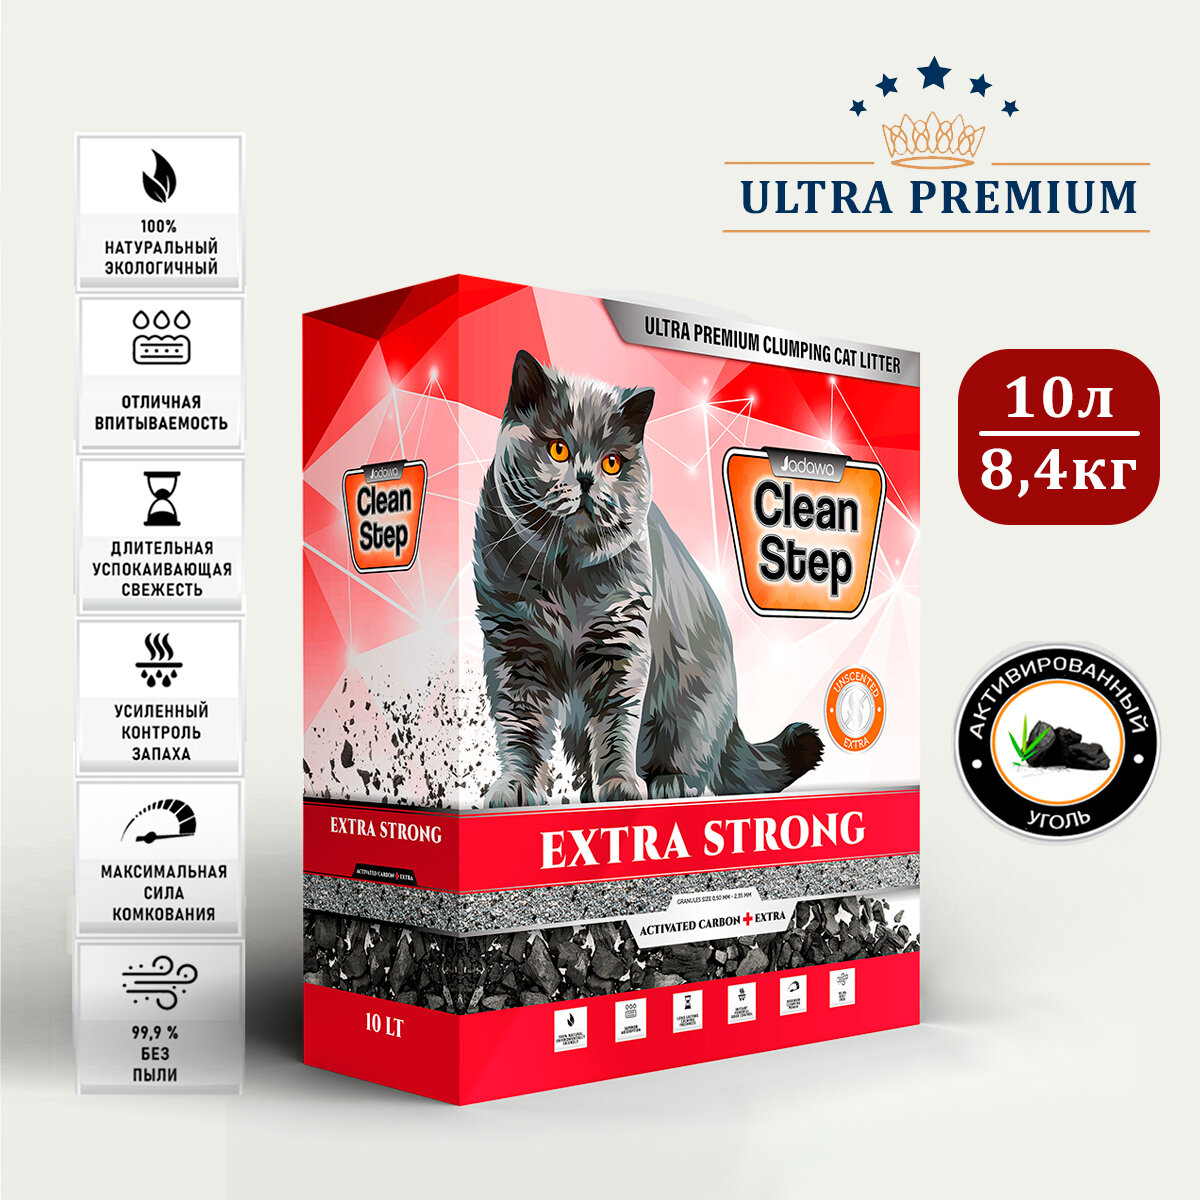 CLEAN STEP Extra Strong with Activated Carbon - комкующийcя наполнитель для кошачьего туалета с повышенным содержанием активированного угля, 10 л